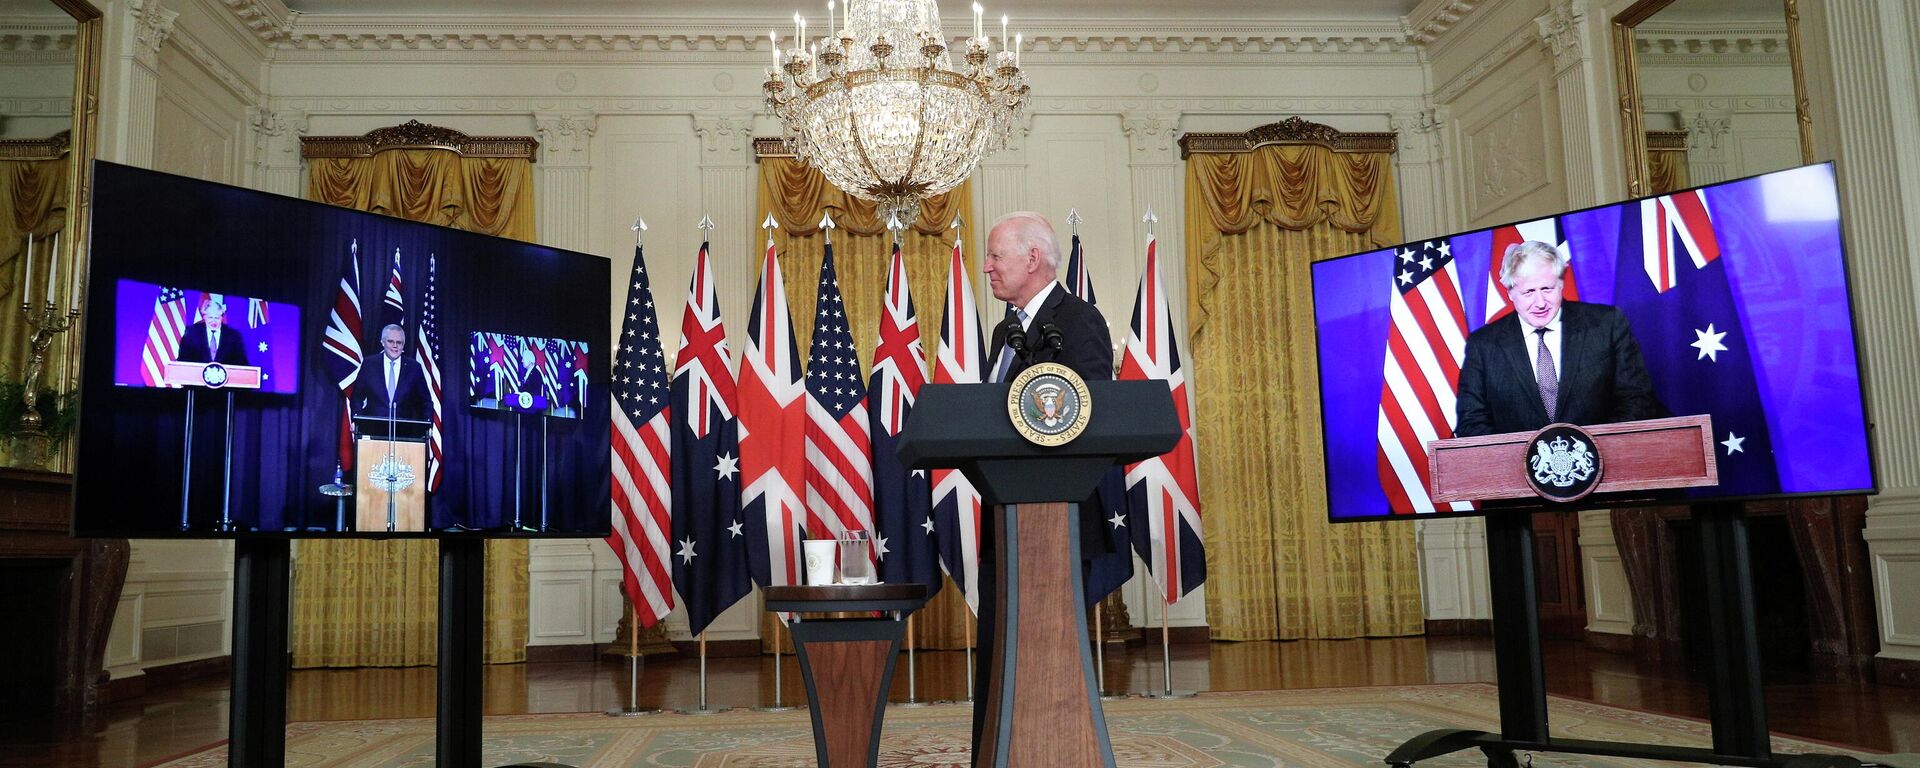 ABD Başkanı Joe Biden, Avustralya Başbakanı Scott Morrison ve İngiltere Başbakanı Boris Johnson - Sputnik Türkiye, 1920, 16.09.2021